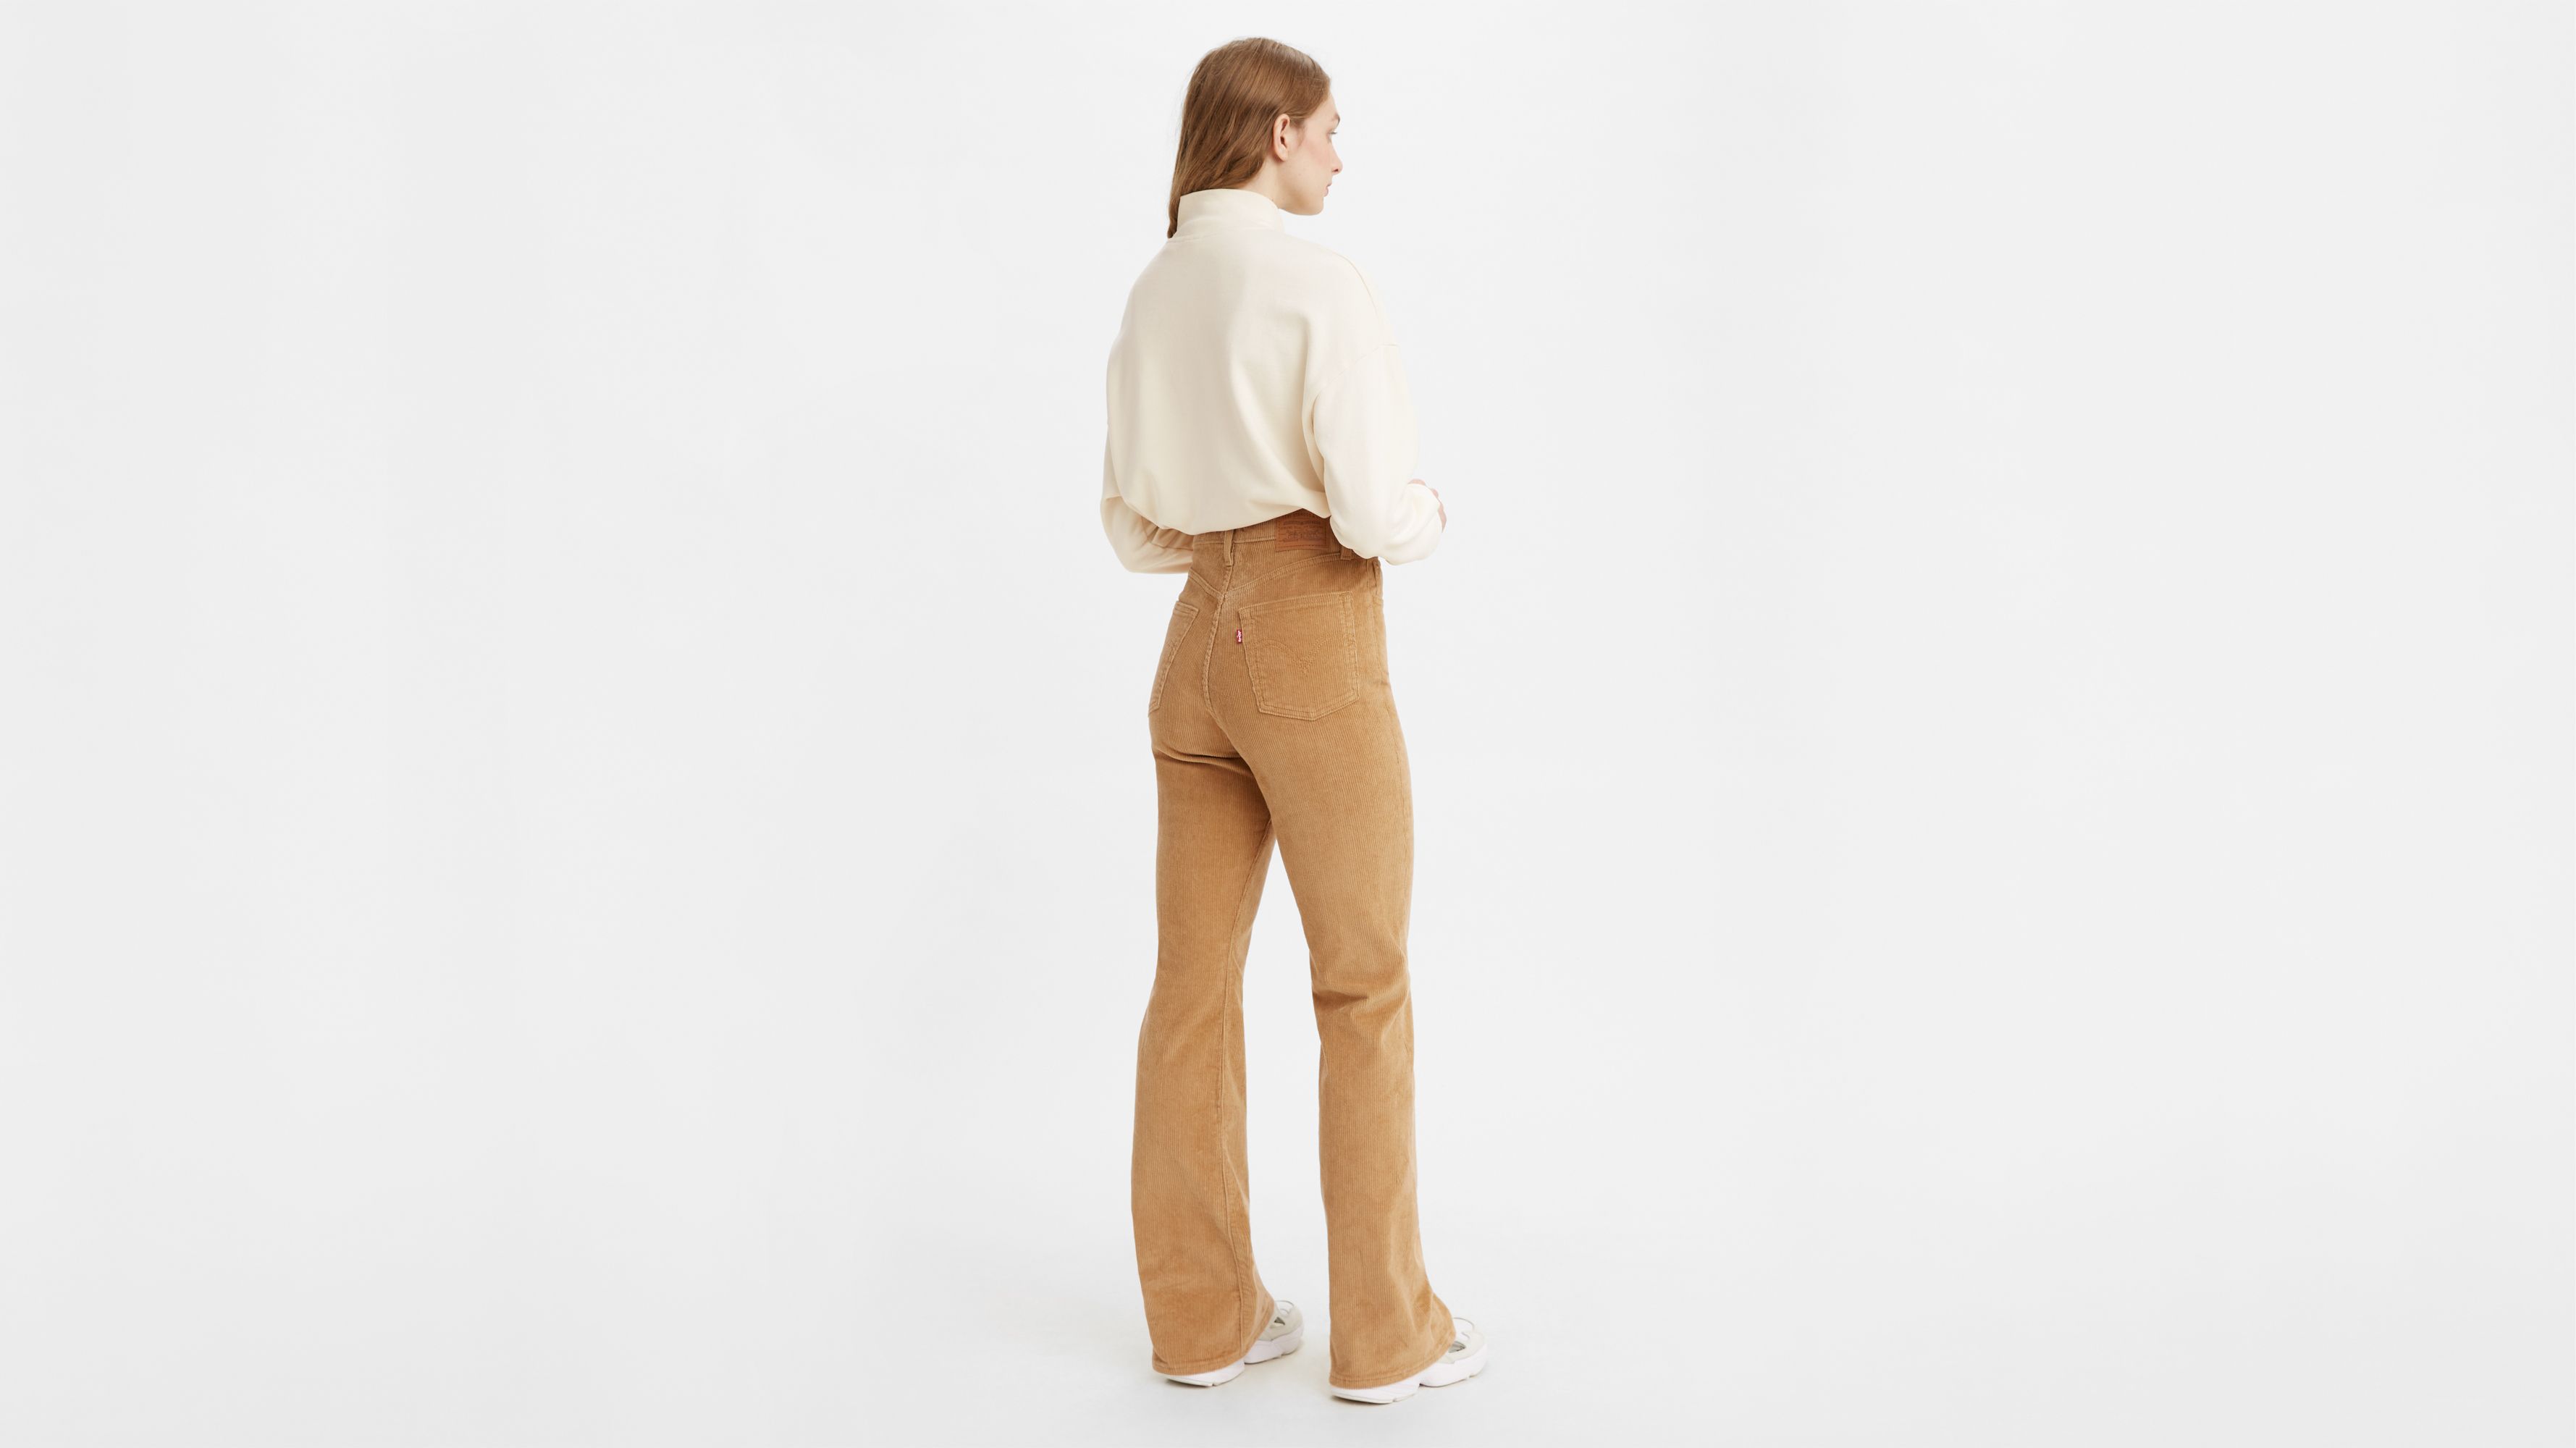 Ribcage Bootcut Corduroy Women's Pants - Multi-color | Levi's® US